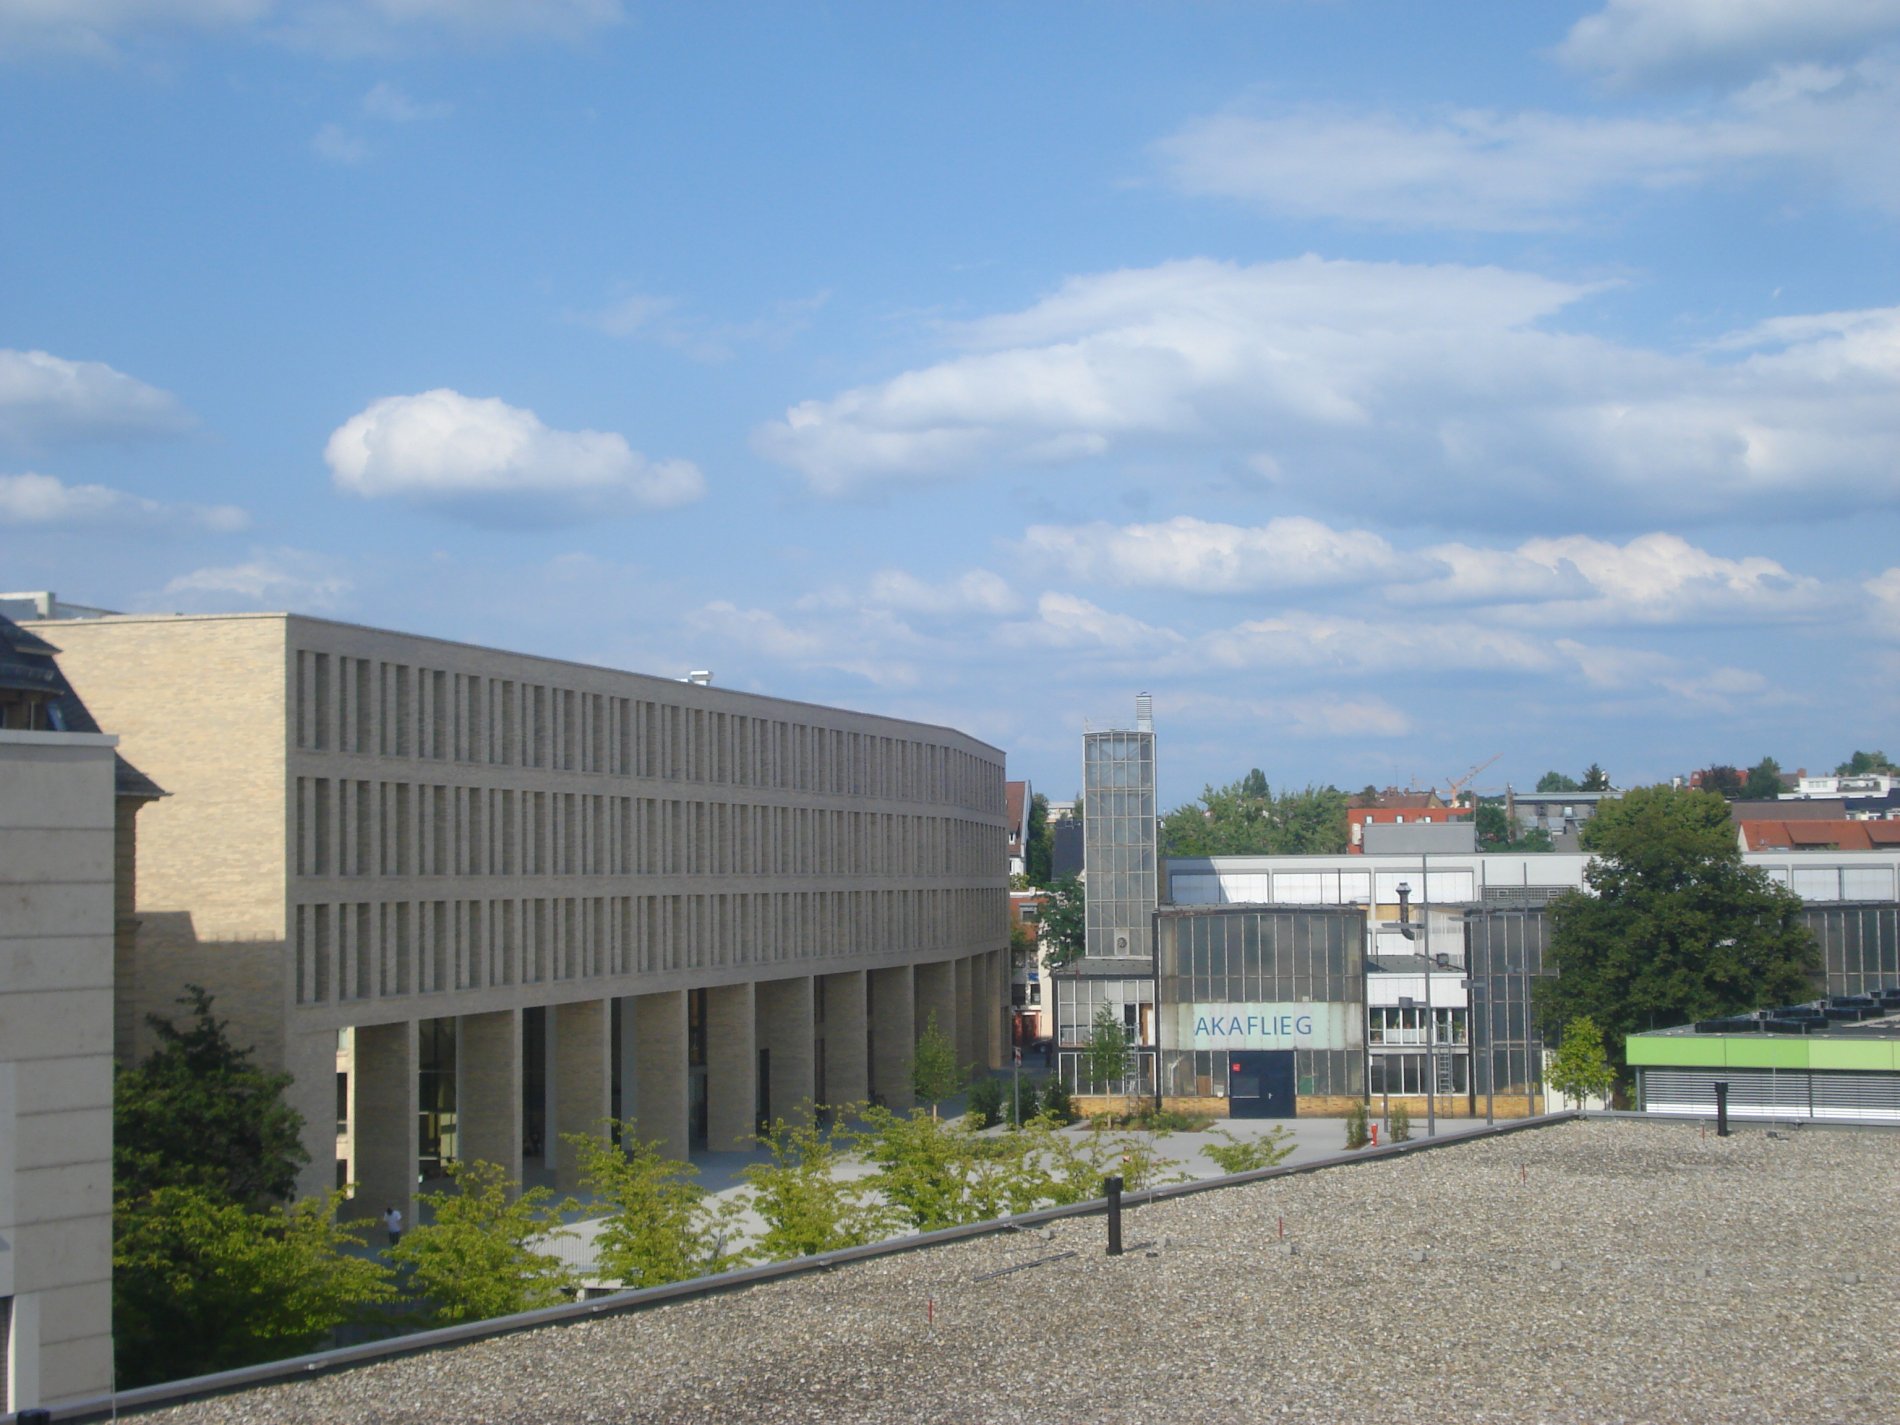 Am linken Bildrand das große Gebäude der Universitäts- und Landesbibliothek, aus hellem Stein, mit Säulengang unten und dre Fensterreihen aus vielen gleichmäßigen Fenstern.